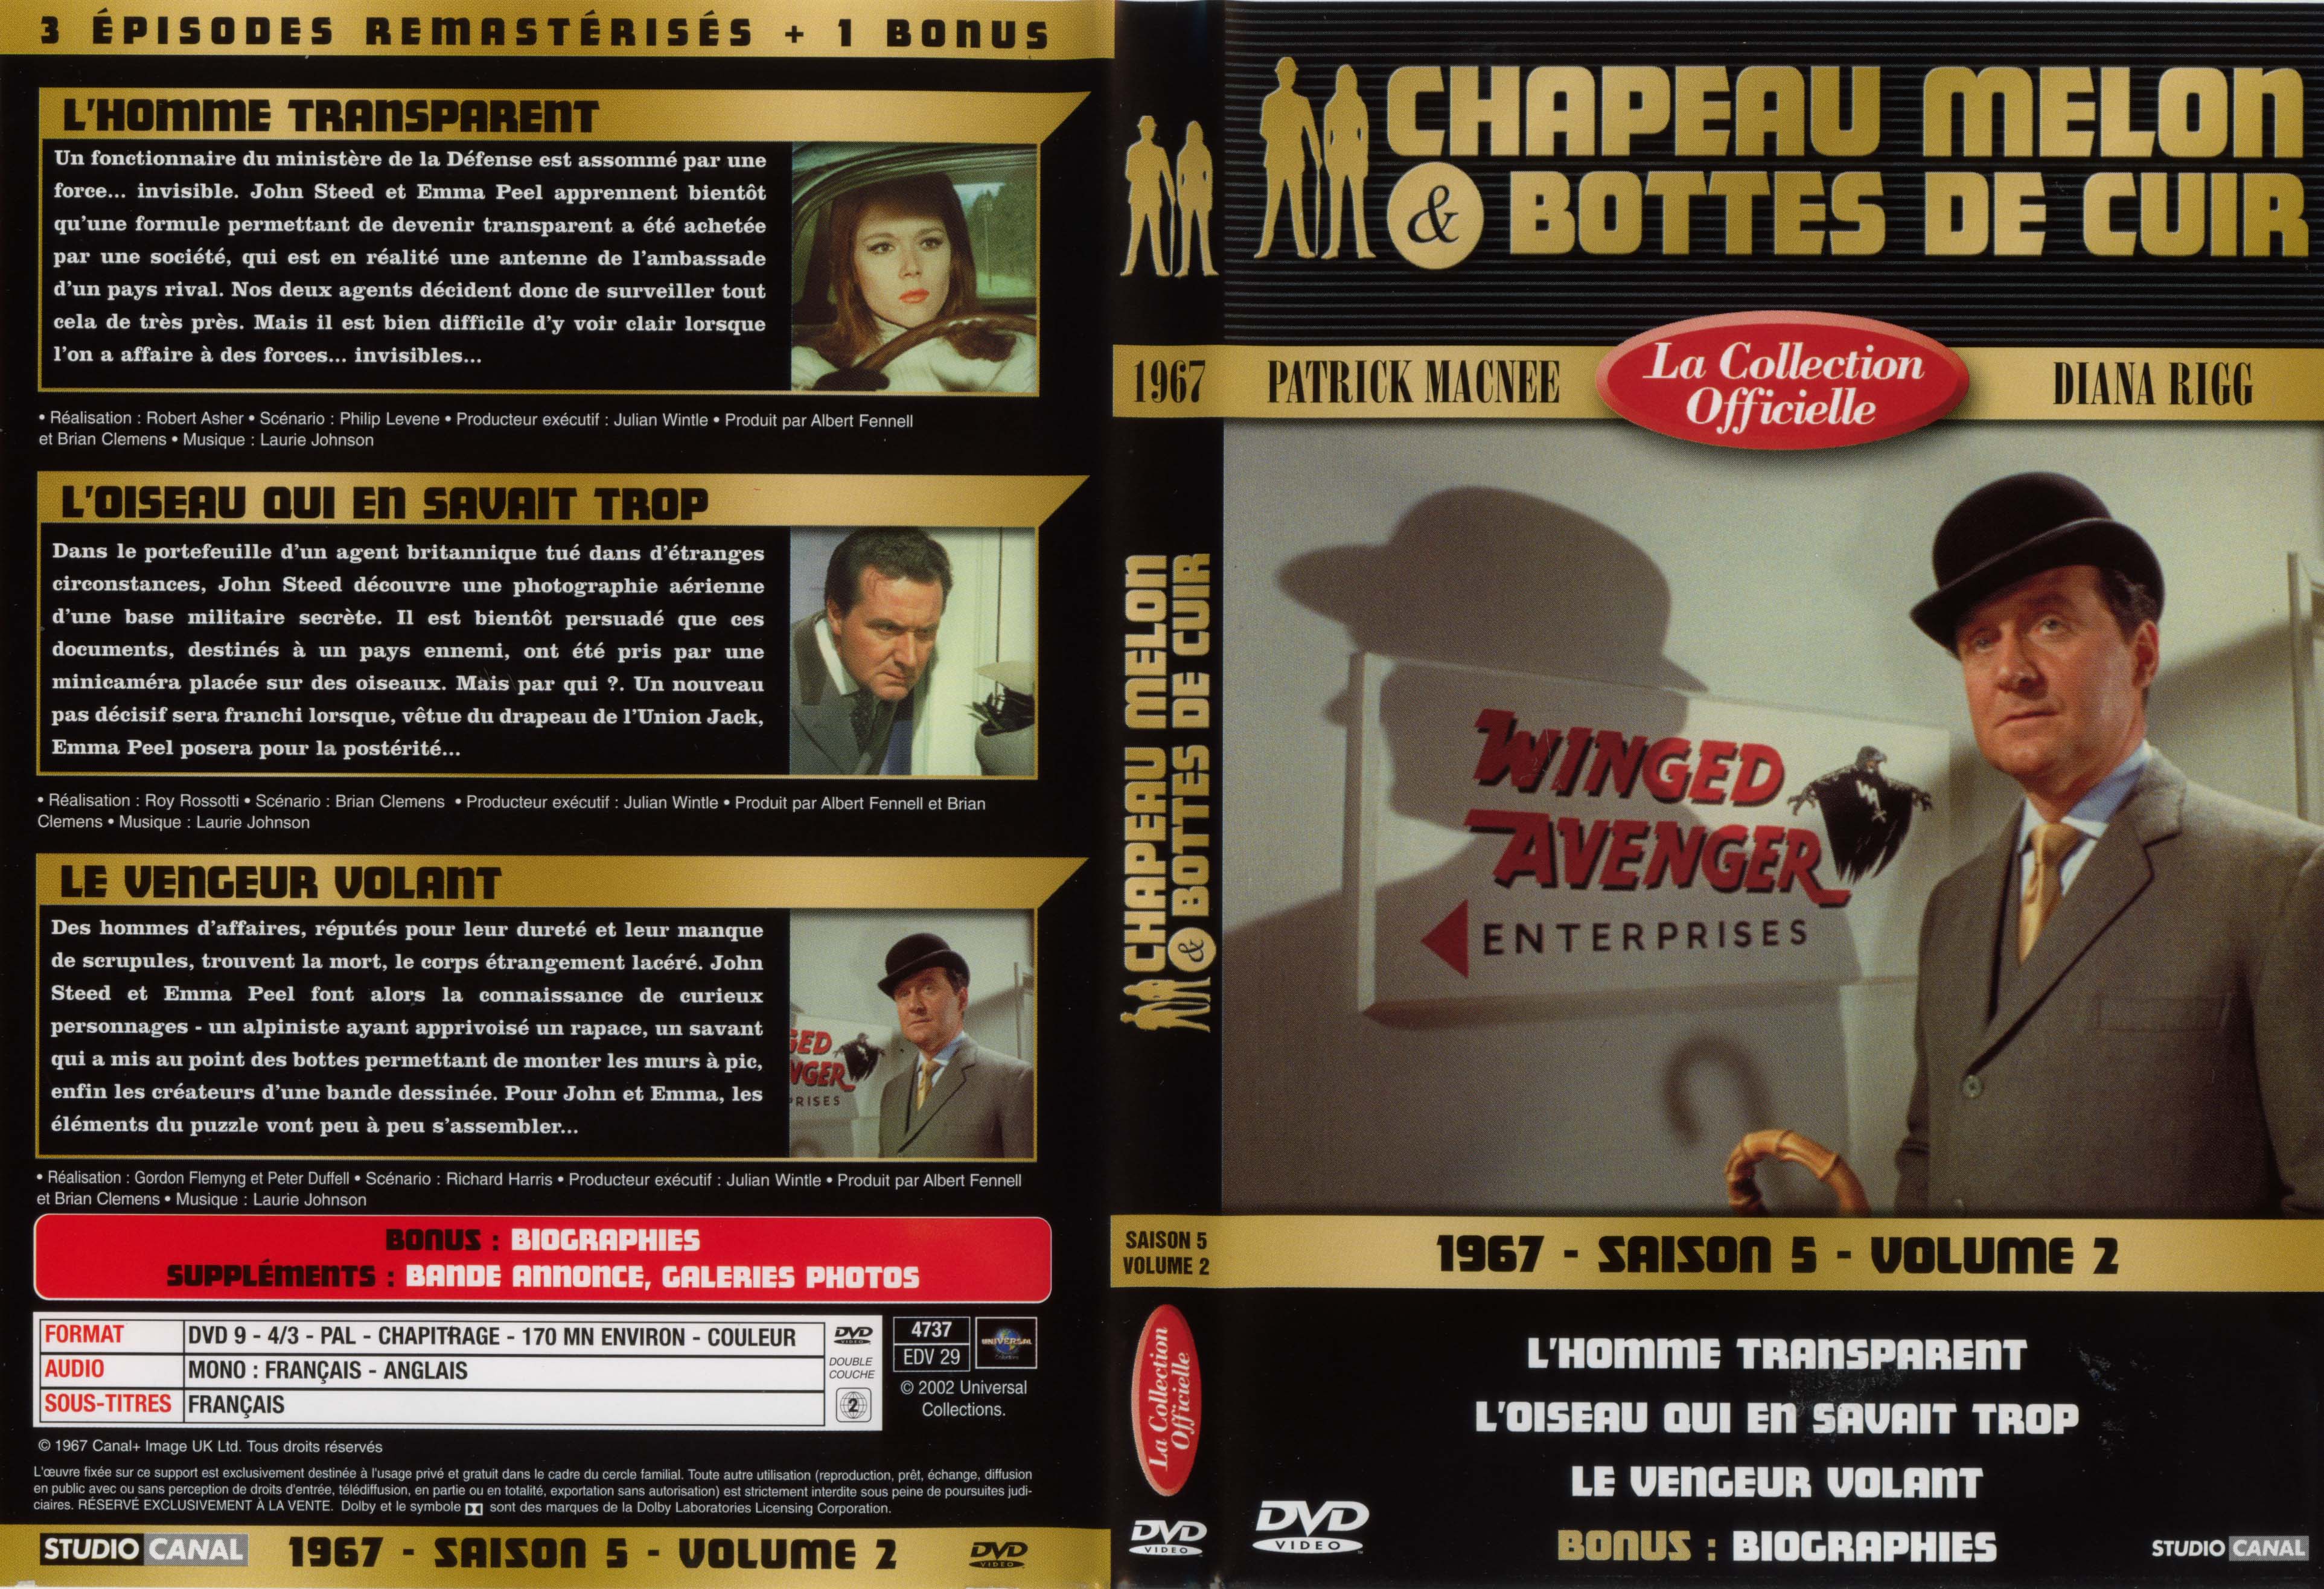 Jaquette DVD Chapeau melon et bottes de cuir 1967 saison 5 vol 2